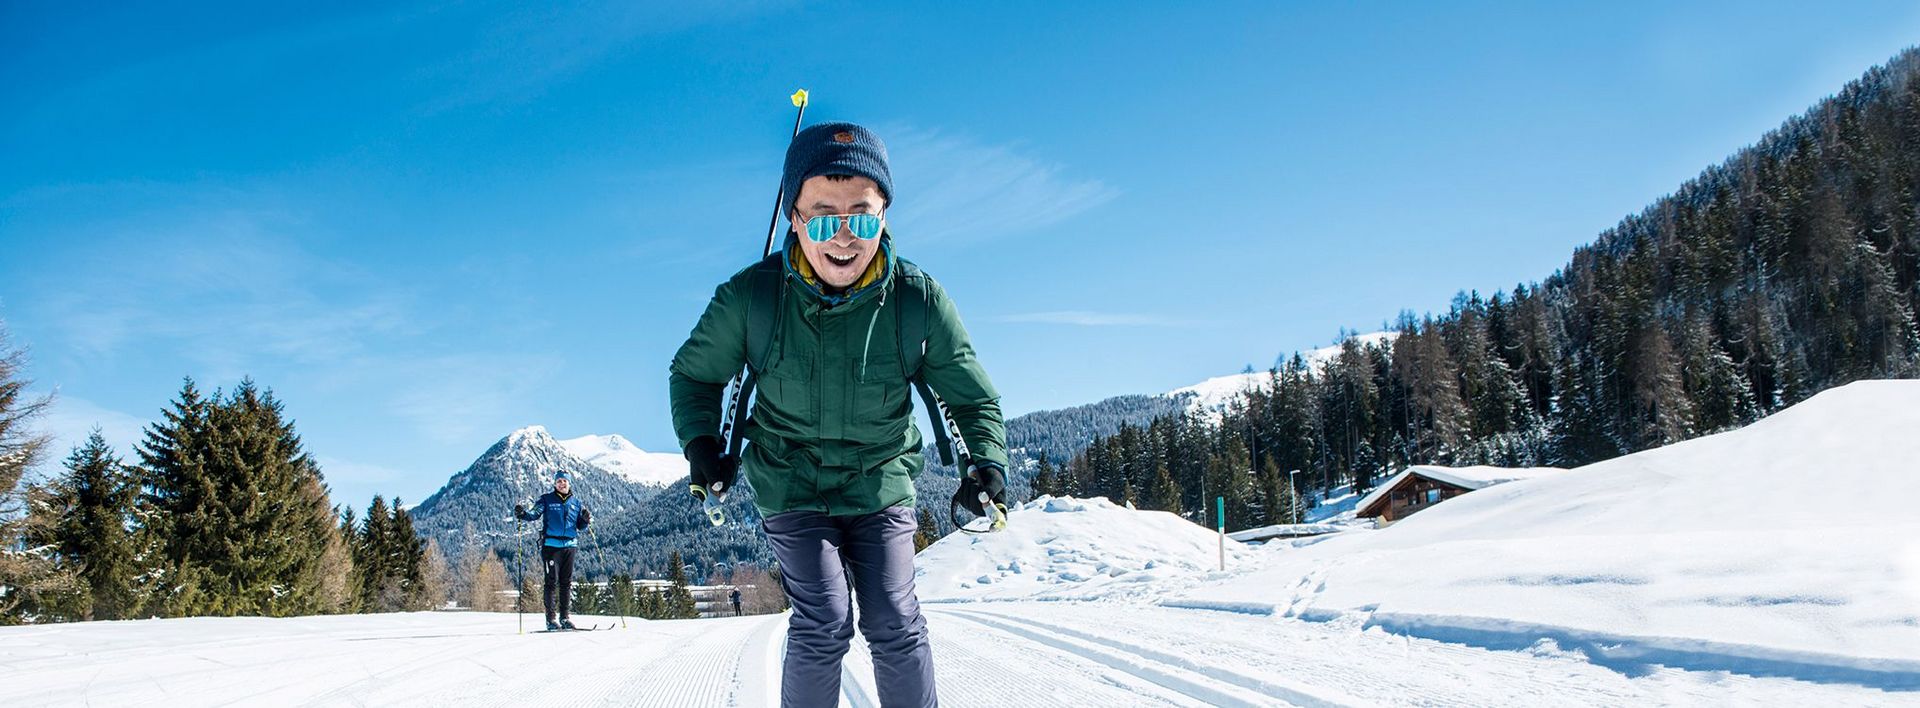 Mit einer vielfältigen Ski-Infrastruktur soll Davos zum Hotspot für chinesische Reisende werden.